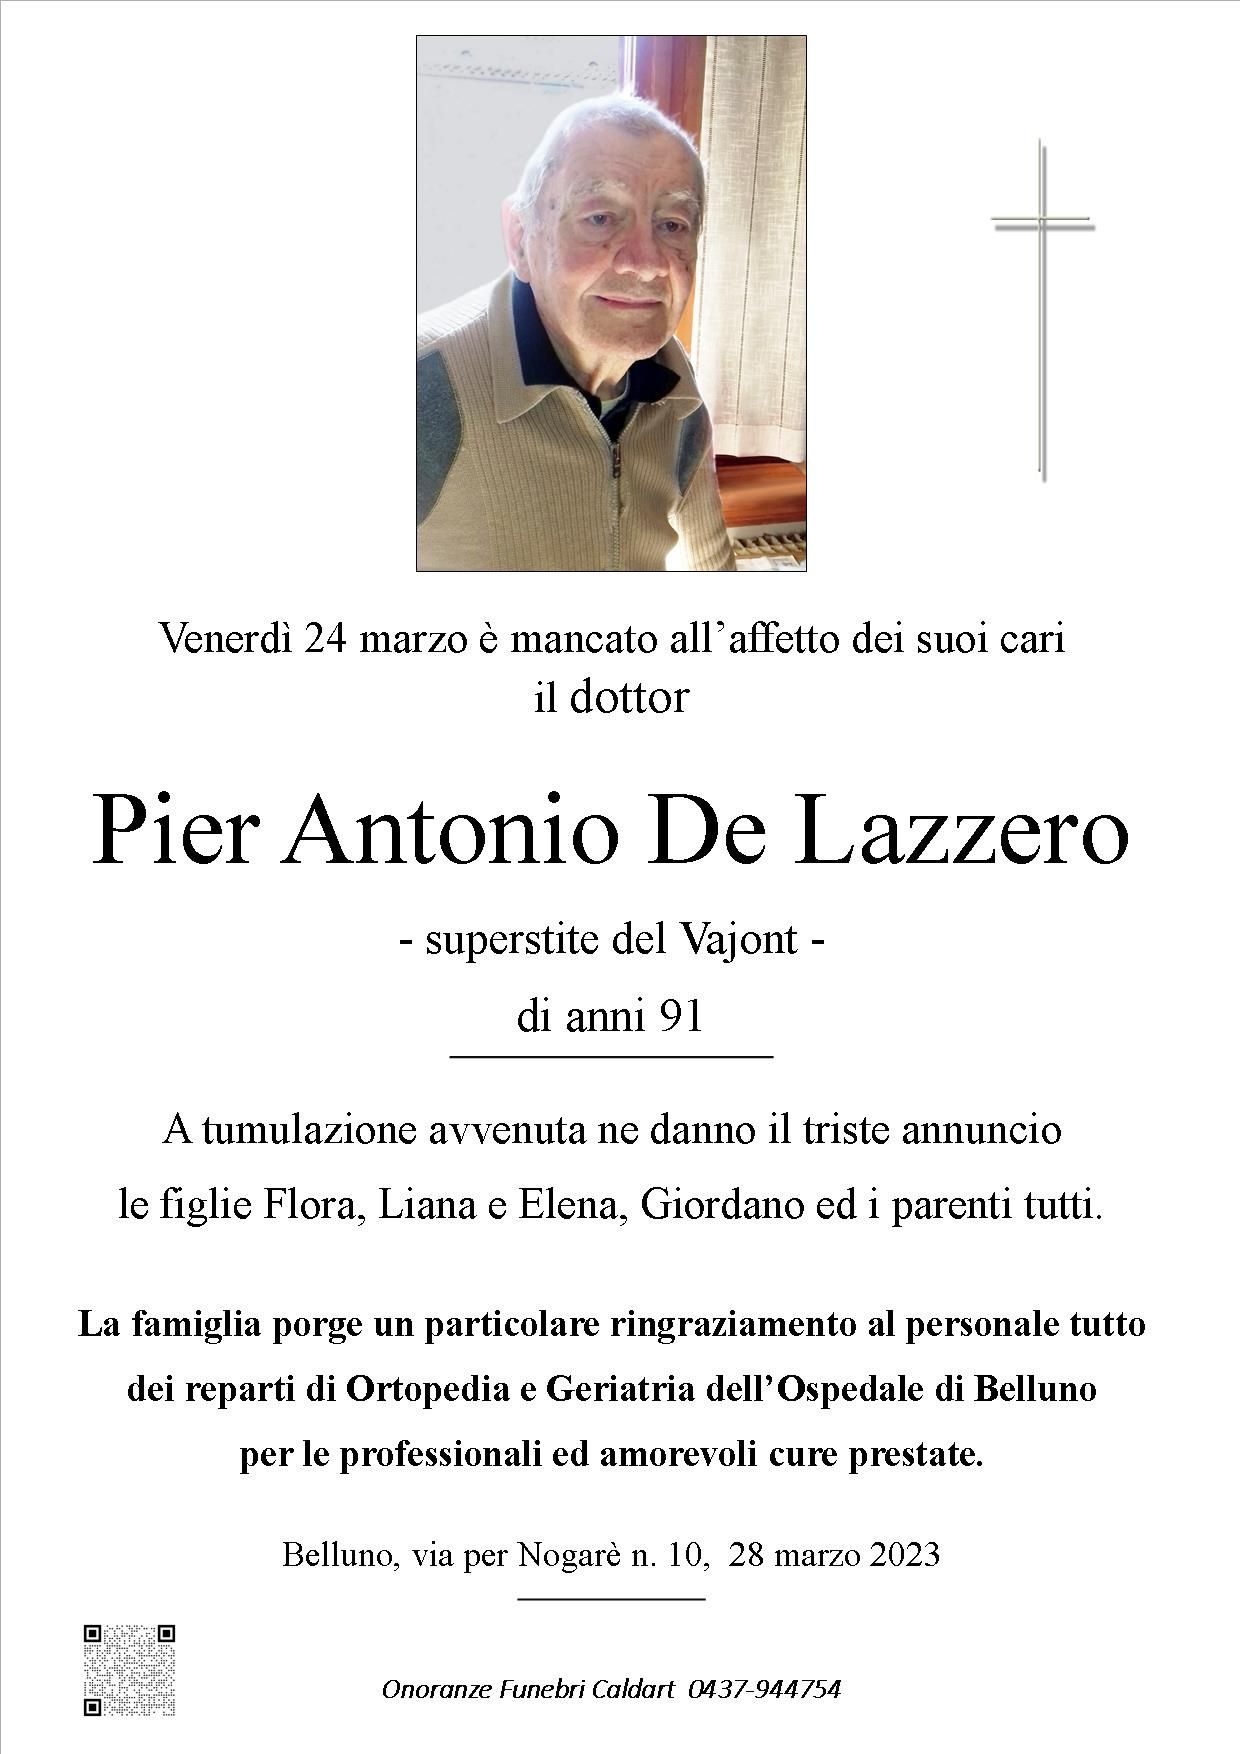 De Lazzero Pier Antonio